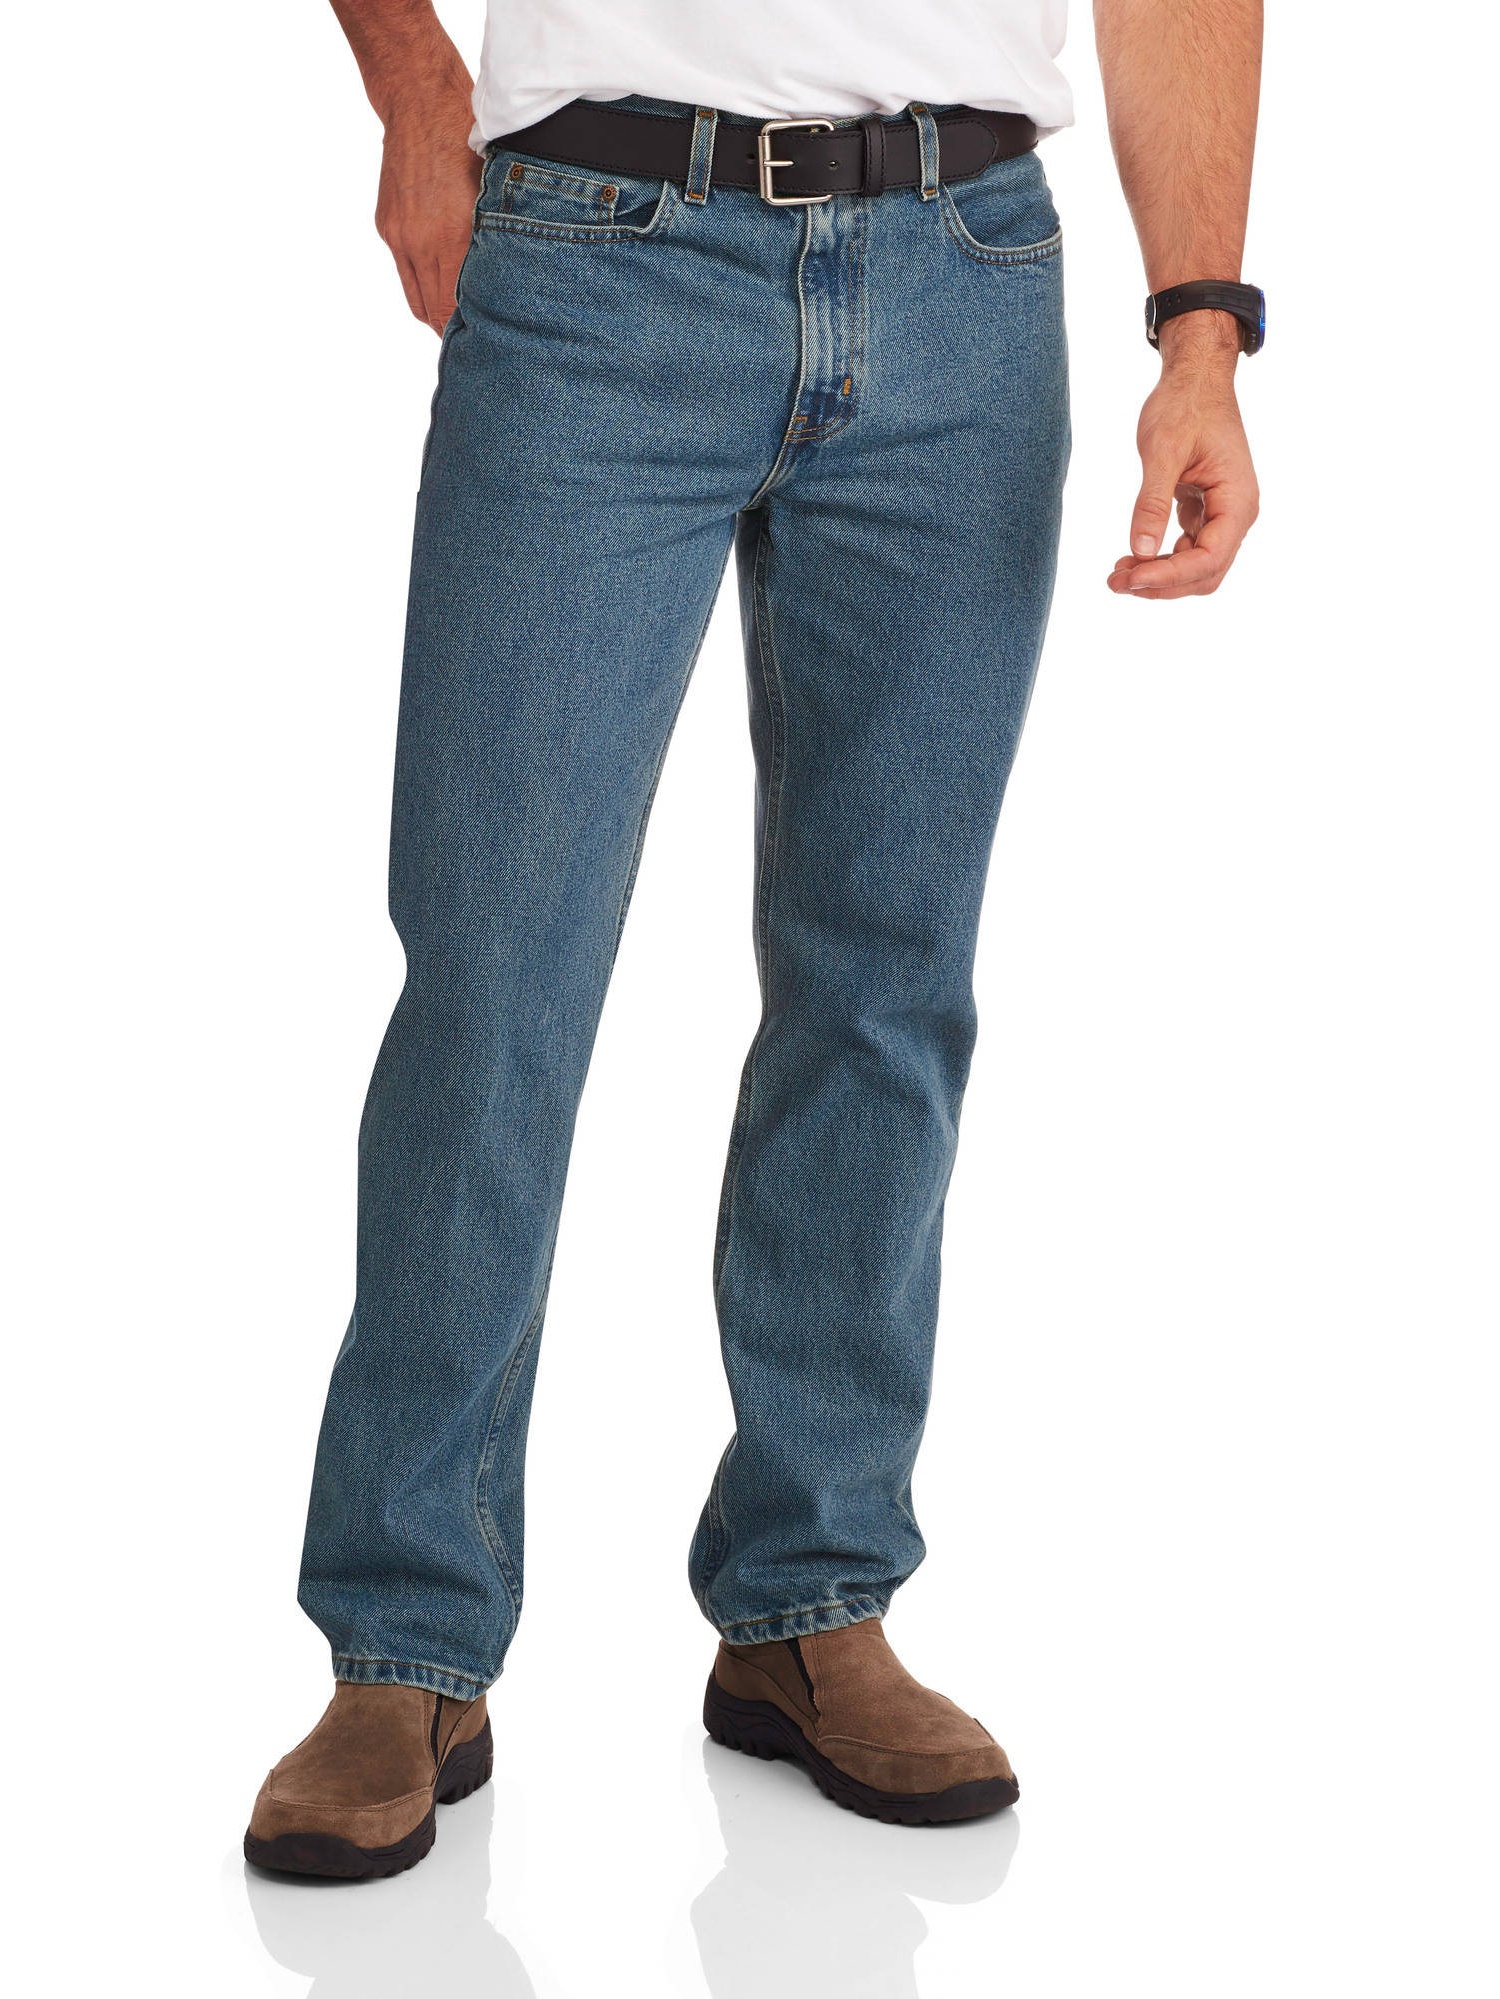 Men's Regular Fit Jeans - image 1 of 2